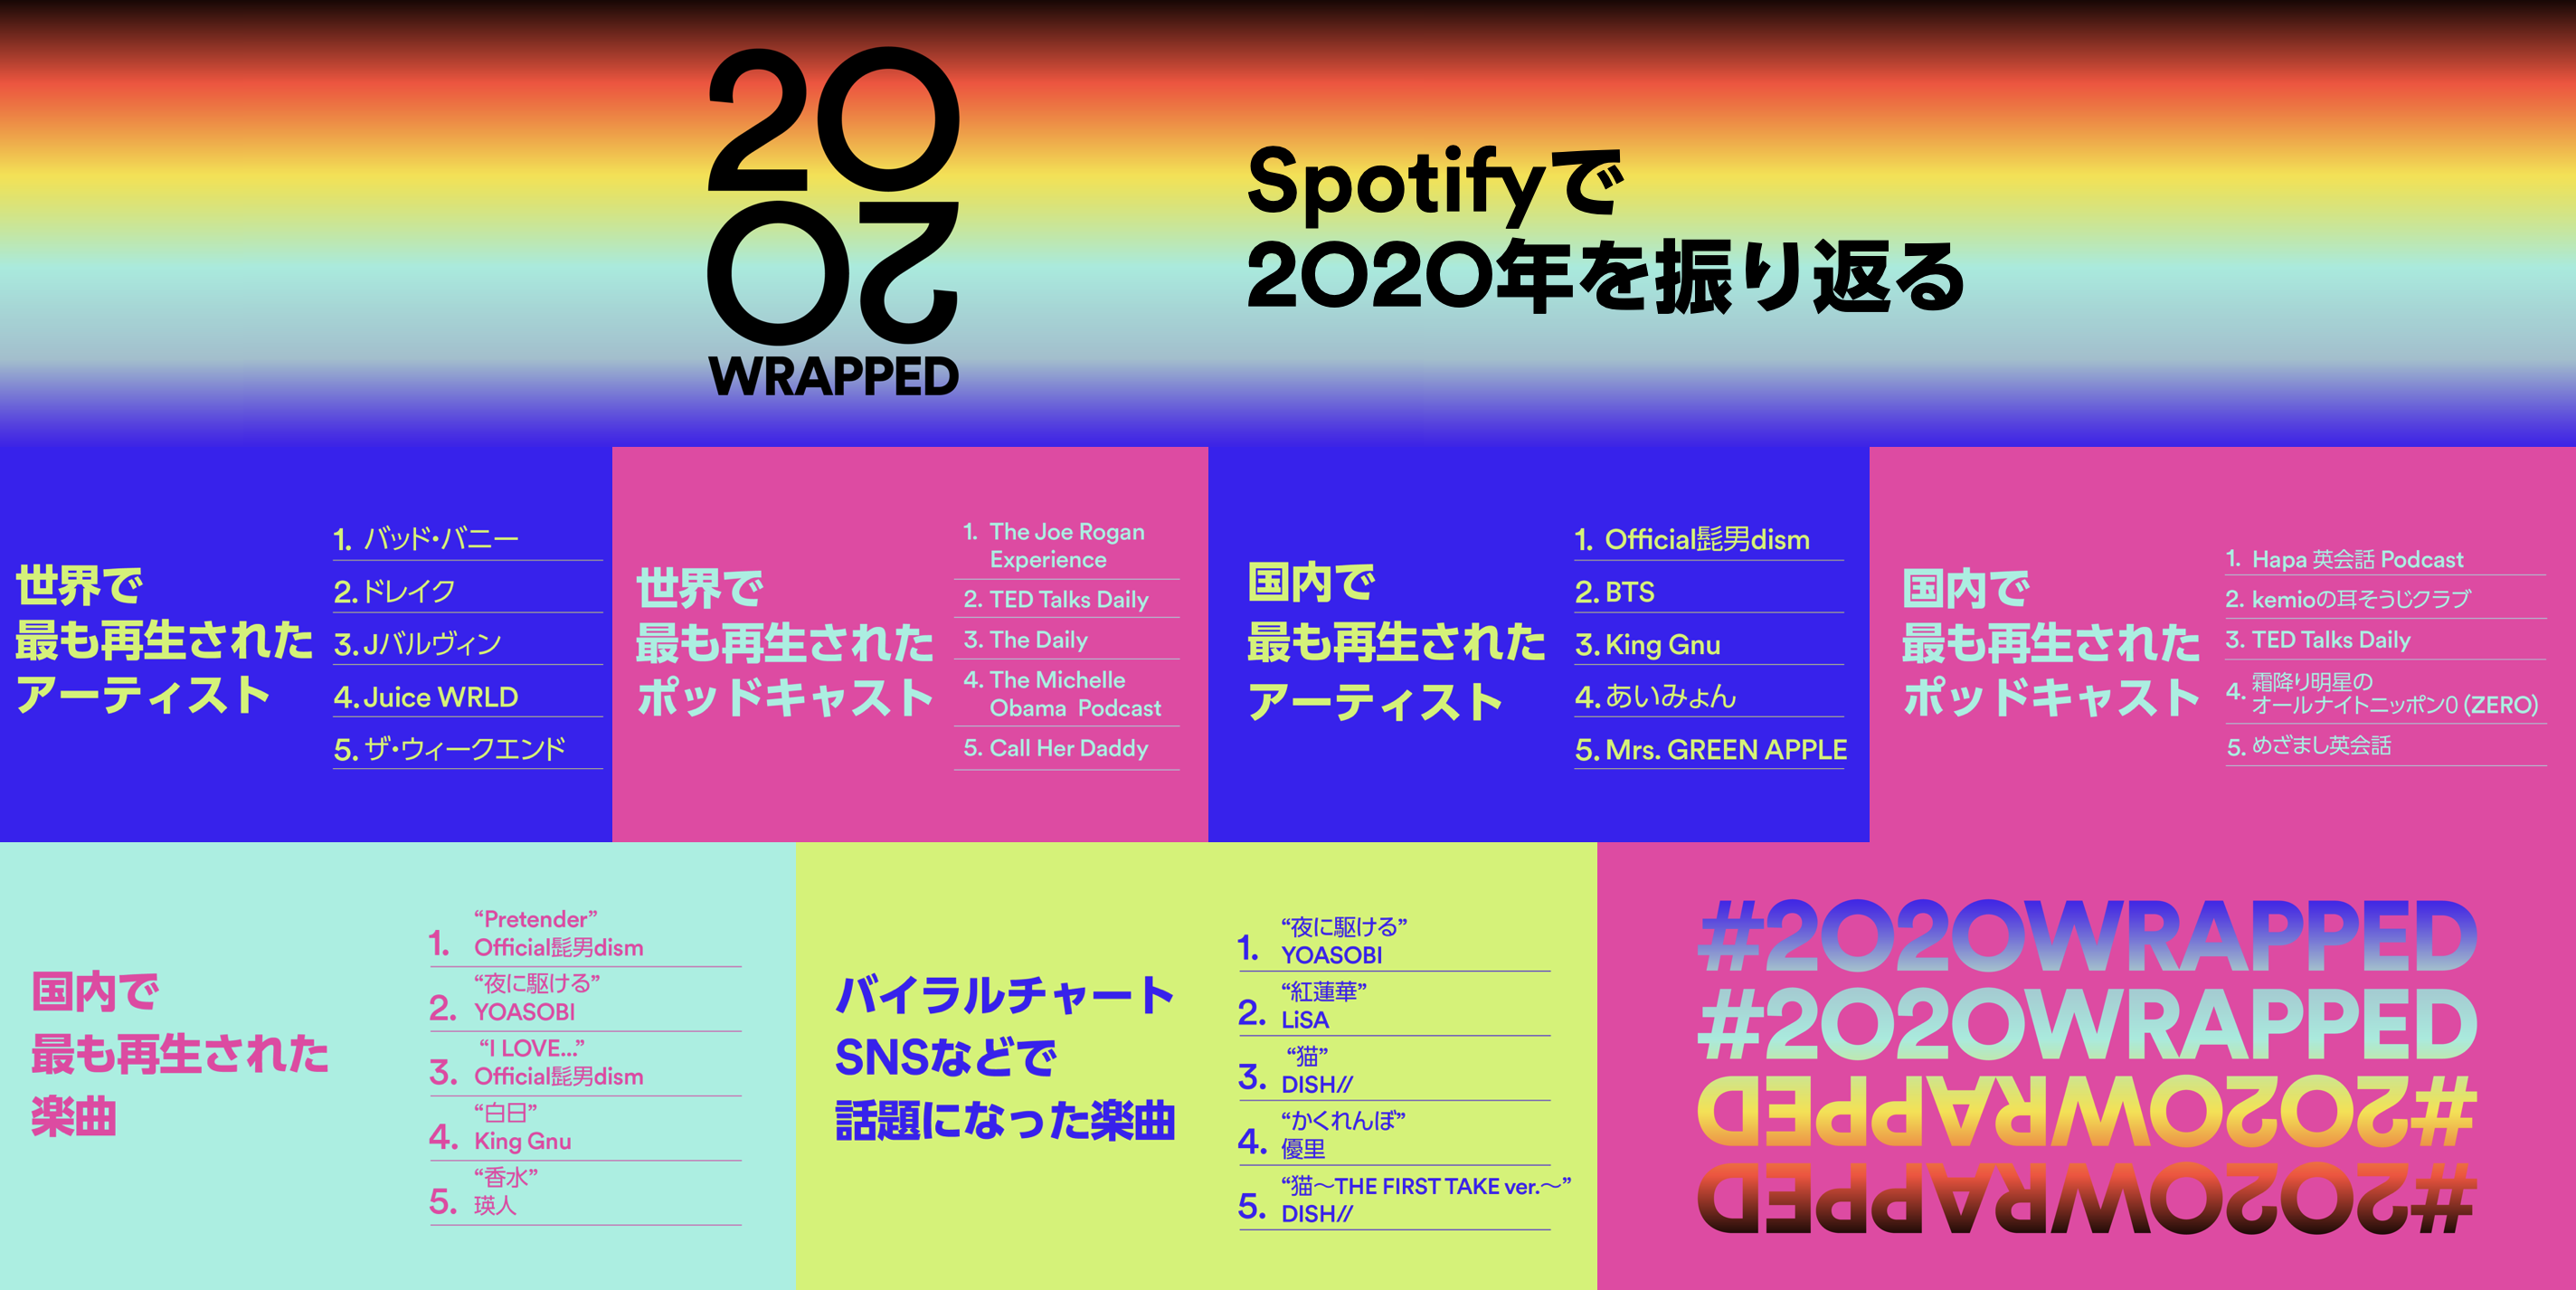 Spotifyが年の音楽シーンを振り返る世界と日本のランキングを発表 スポティファイジャパン株式会社のプレスリリース